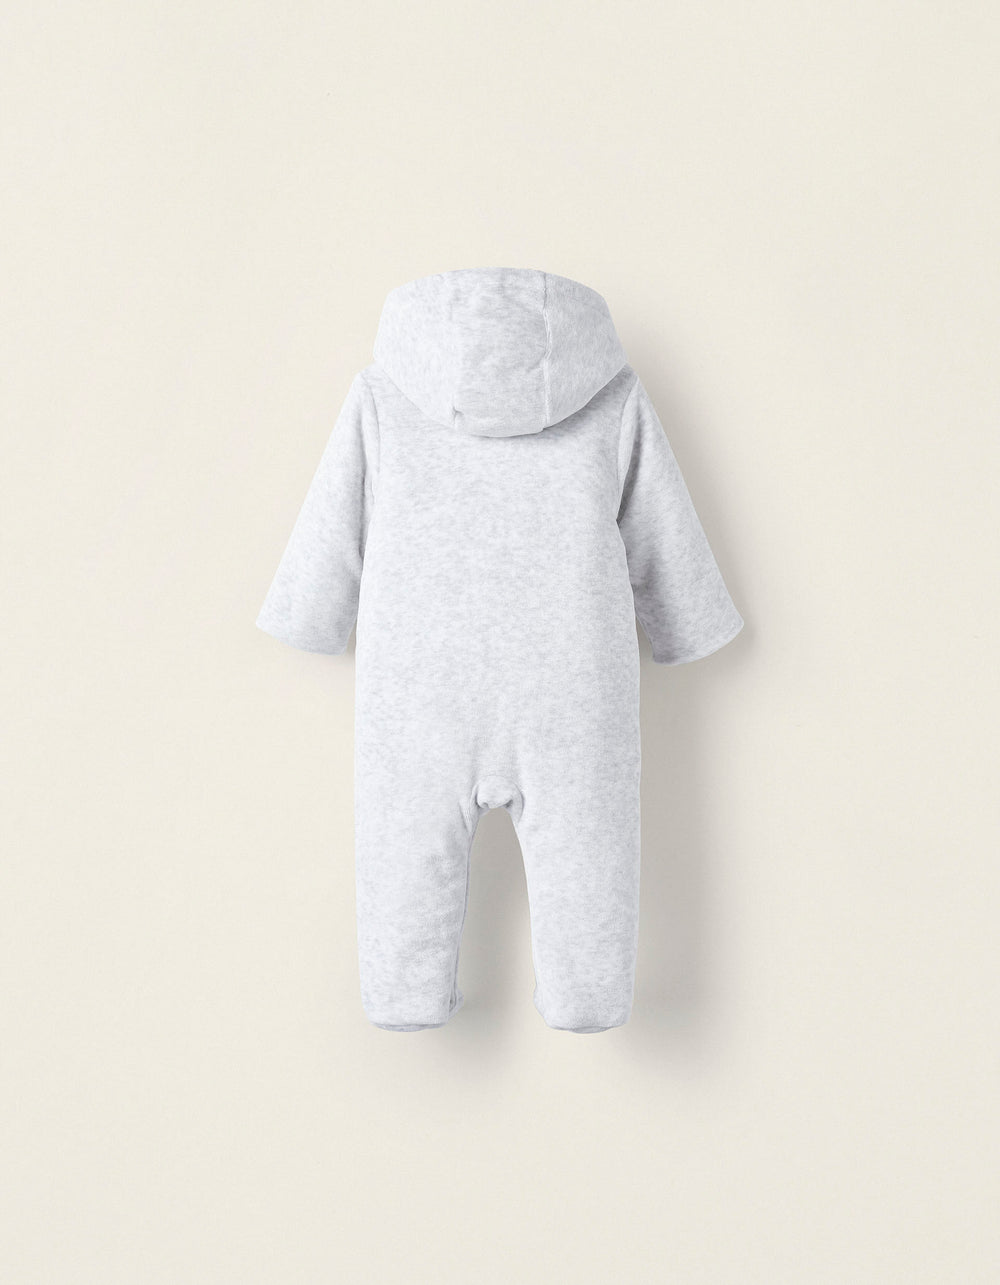 Velvet Babygrow for Baby and Newborn 'Elephant', Gray